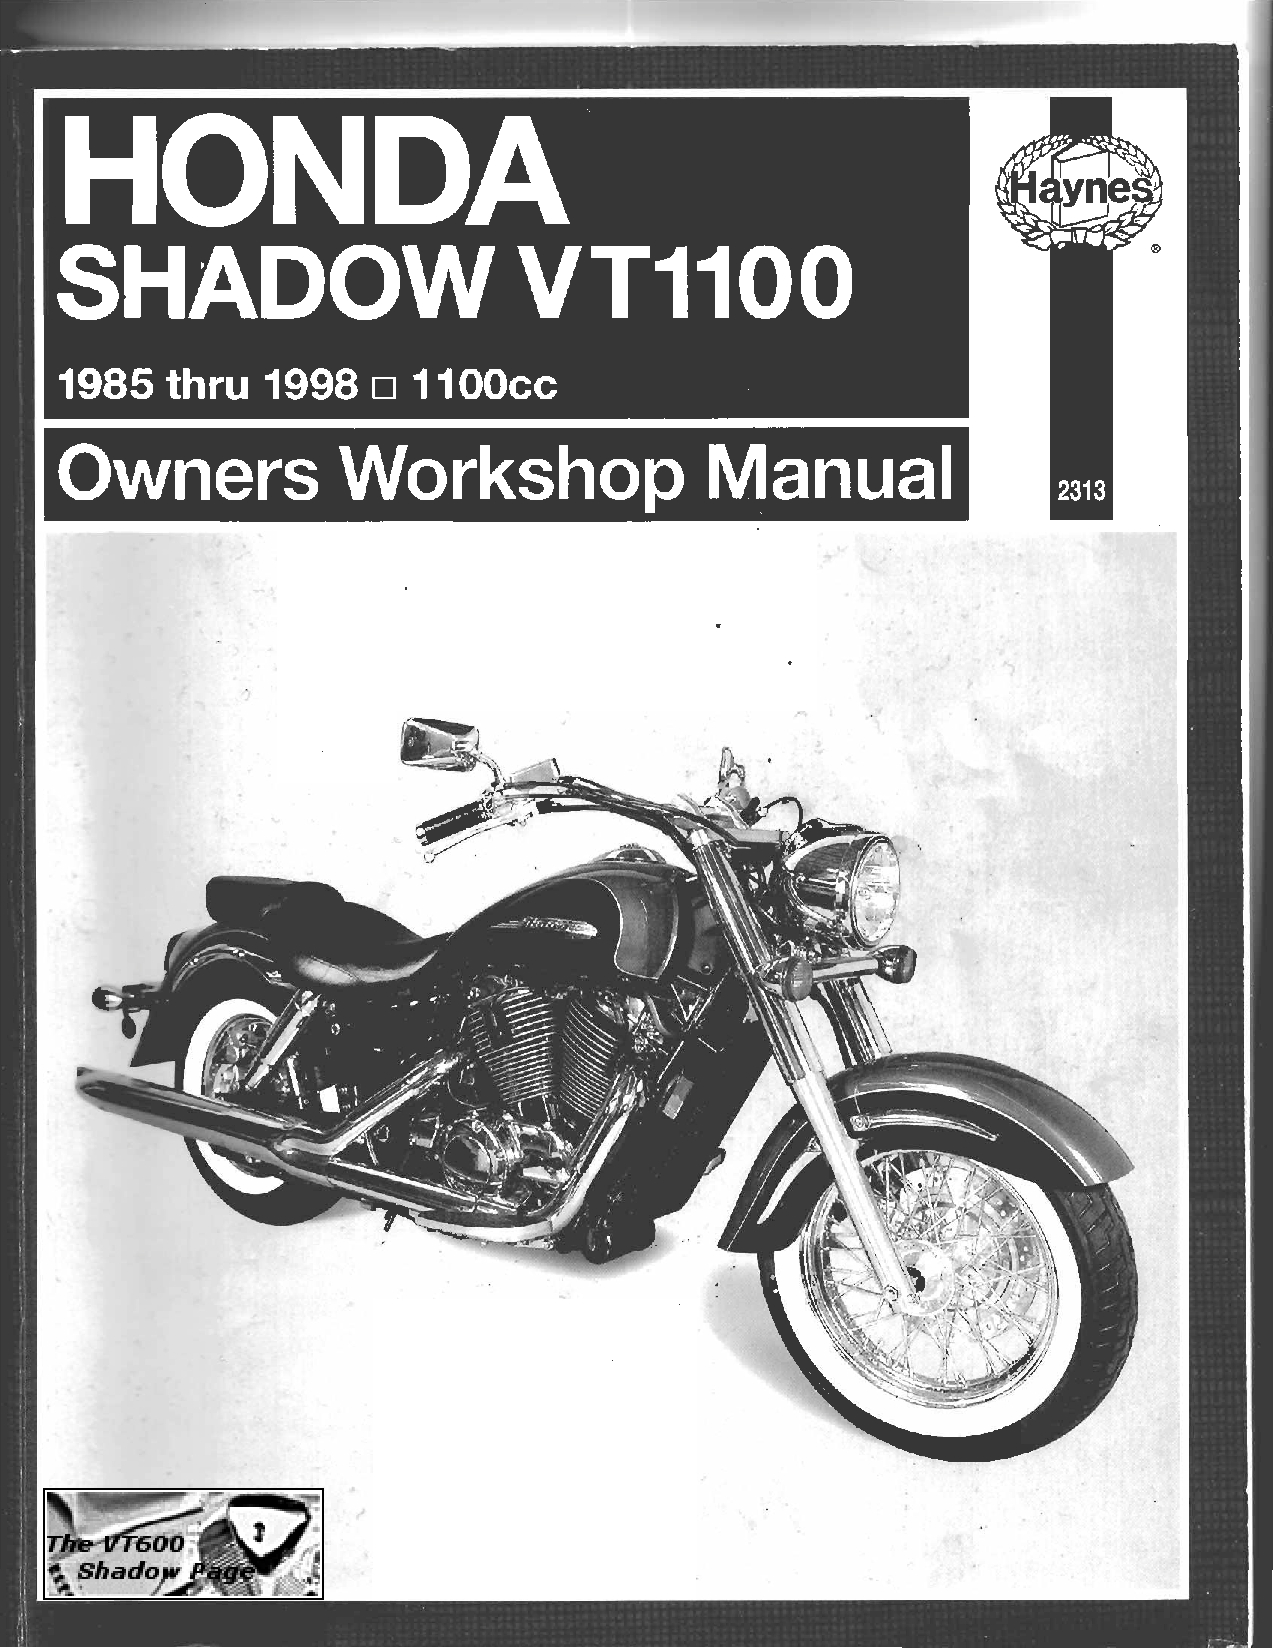 Honda VT 1100 1985 1998 Repair Manual PDF Download - Service manual ...